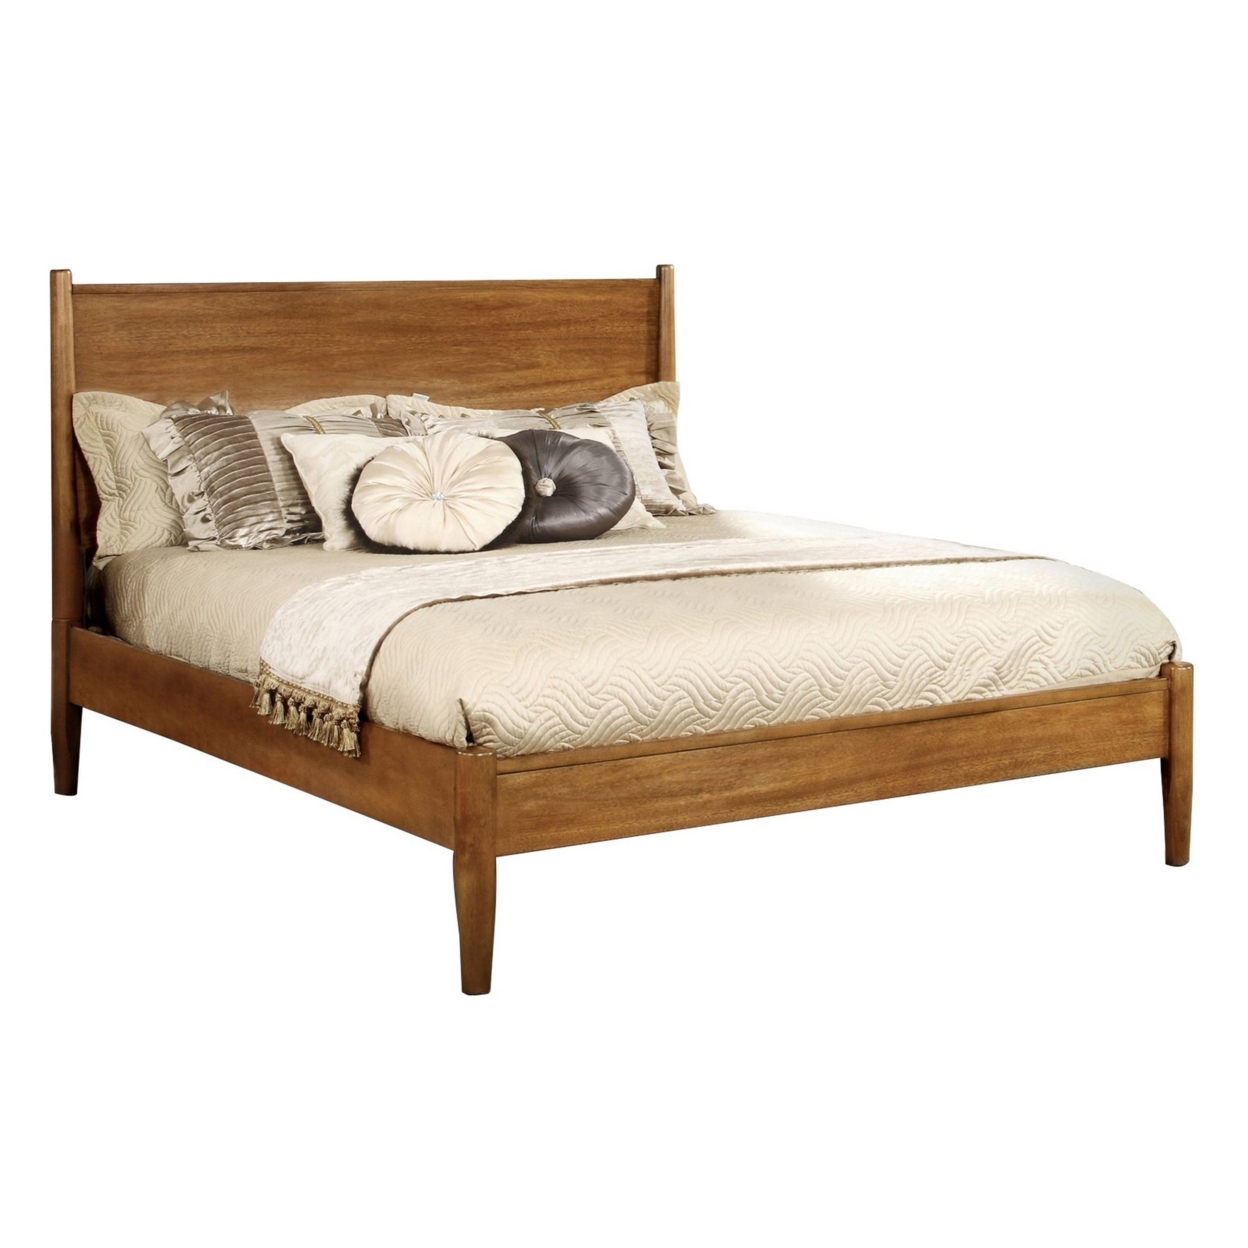 Wooden Eastern King Size Bed With Panel Headboard, Oak Brown- Saltoro Sherpi